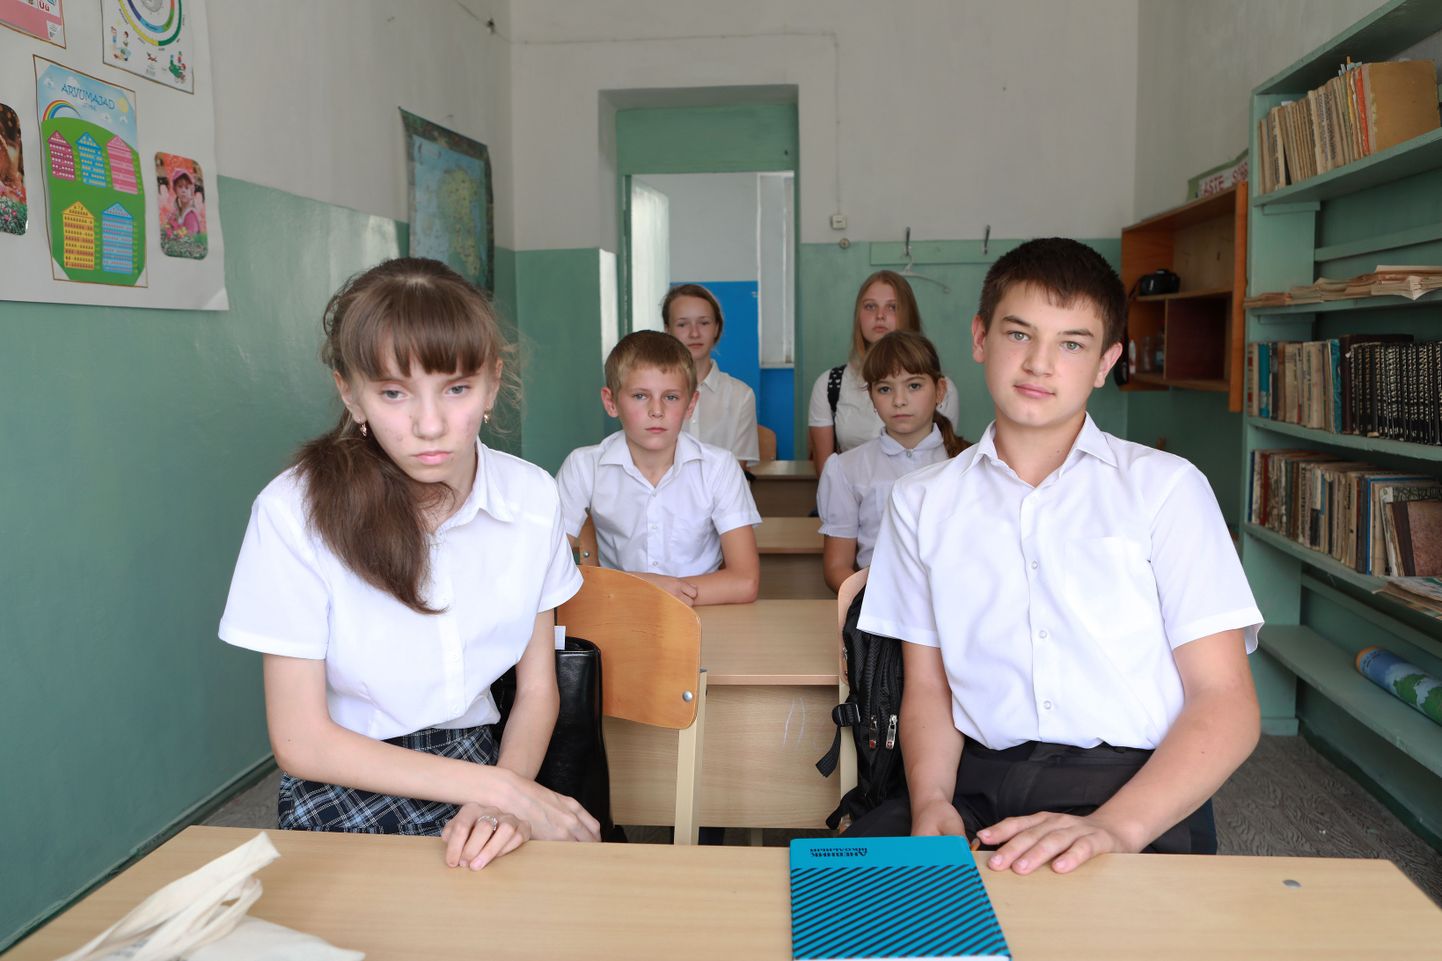 Класс, в котором в абхазской школе Сальме детей учат эстонскому языку. В конце сентября уроков еще не было, все ждали возвращения учителя, которая летом пережила инсульт.